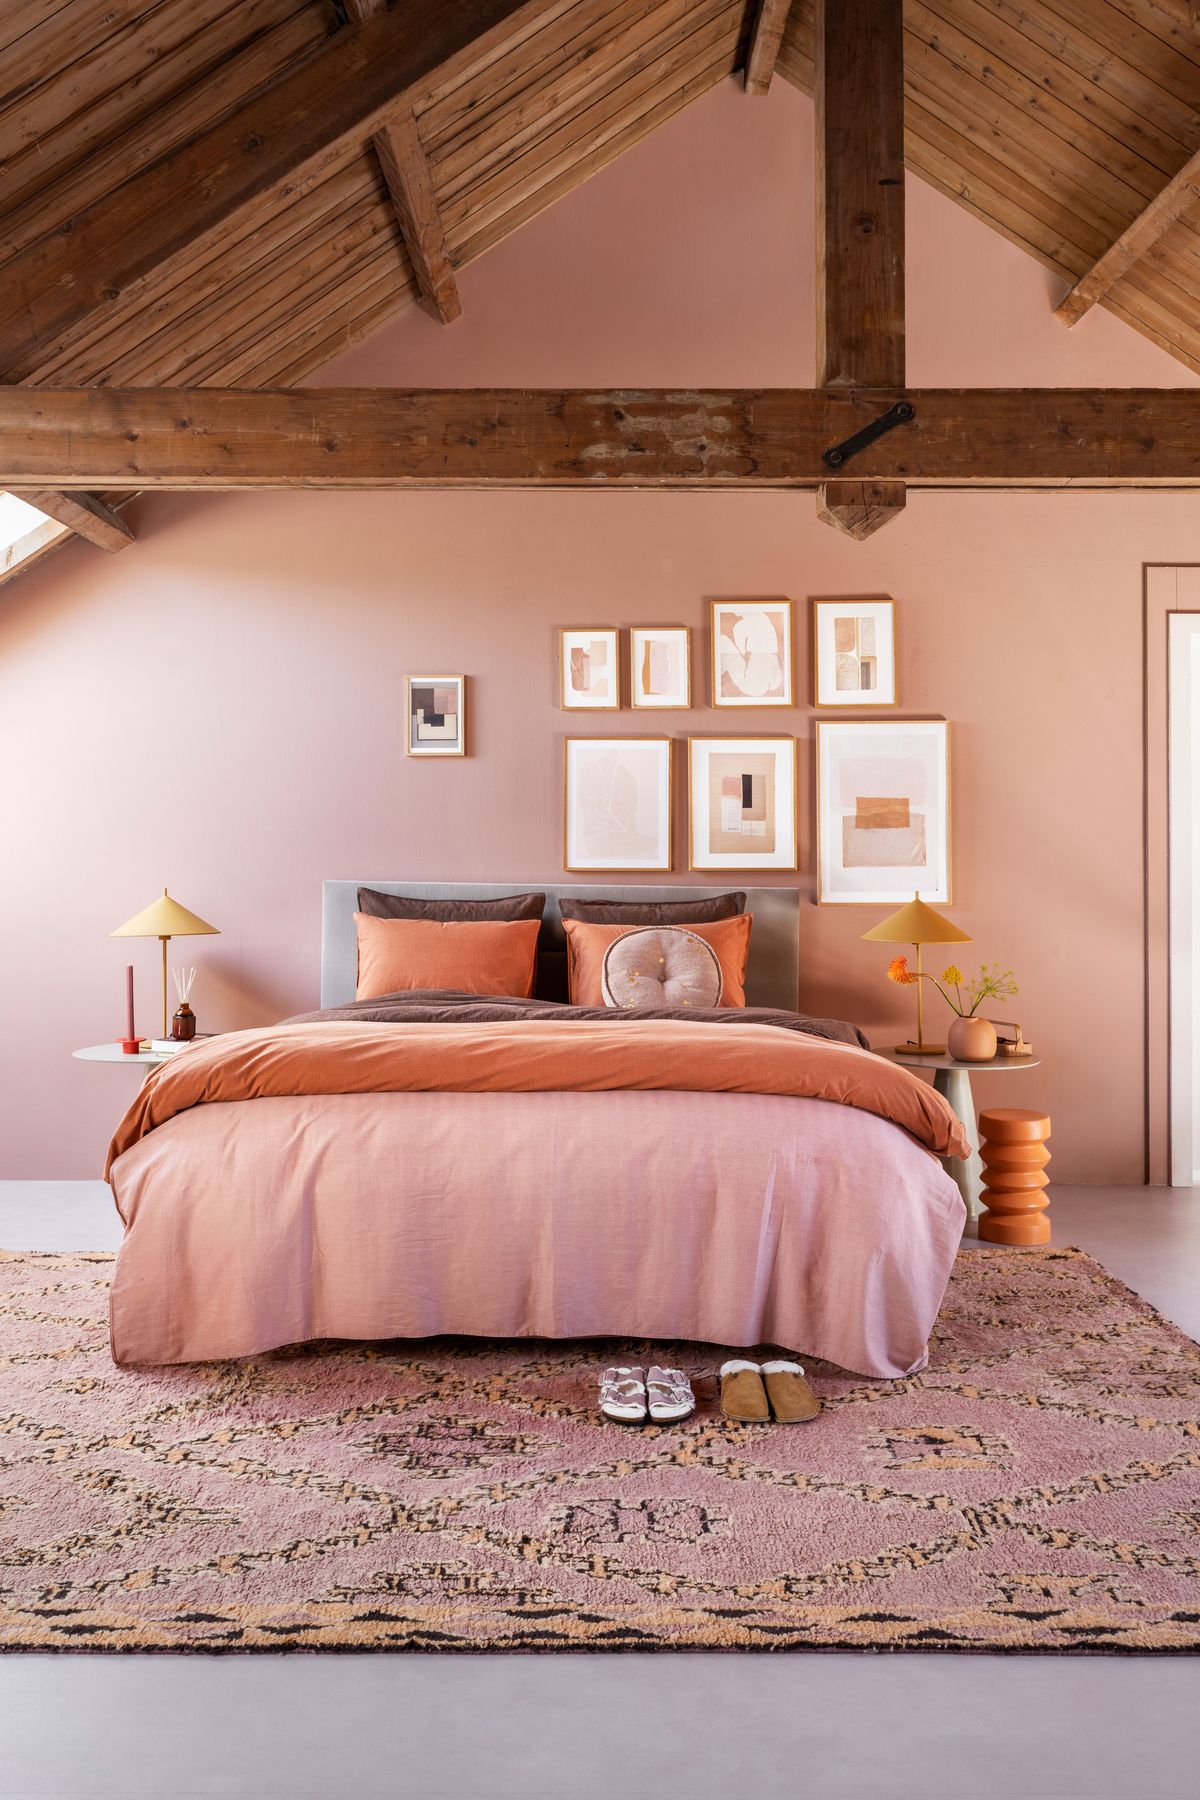 Phòng ngủ trên tầng áp mái với bảng màu cực 'ngọt': Tường hồng phấn, chăn ga gối nâu - cam đất, đèn ngủ sắc vàng mù tạt và tấm thảm trải sàn hồng tím,... tất cả hòa quyện tạo nên bầu không khí ấm cúng, dễ chịu.